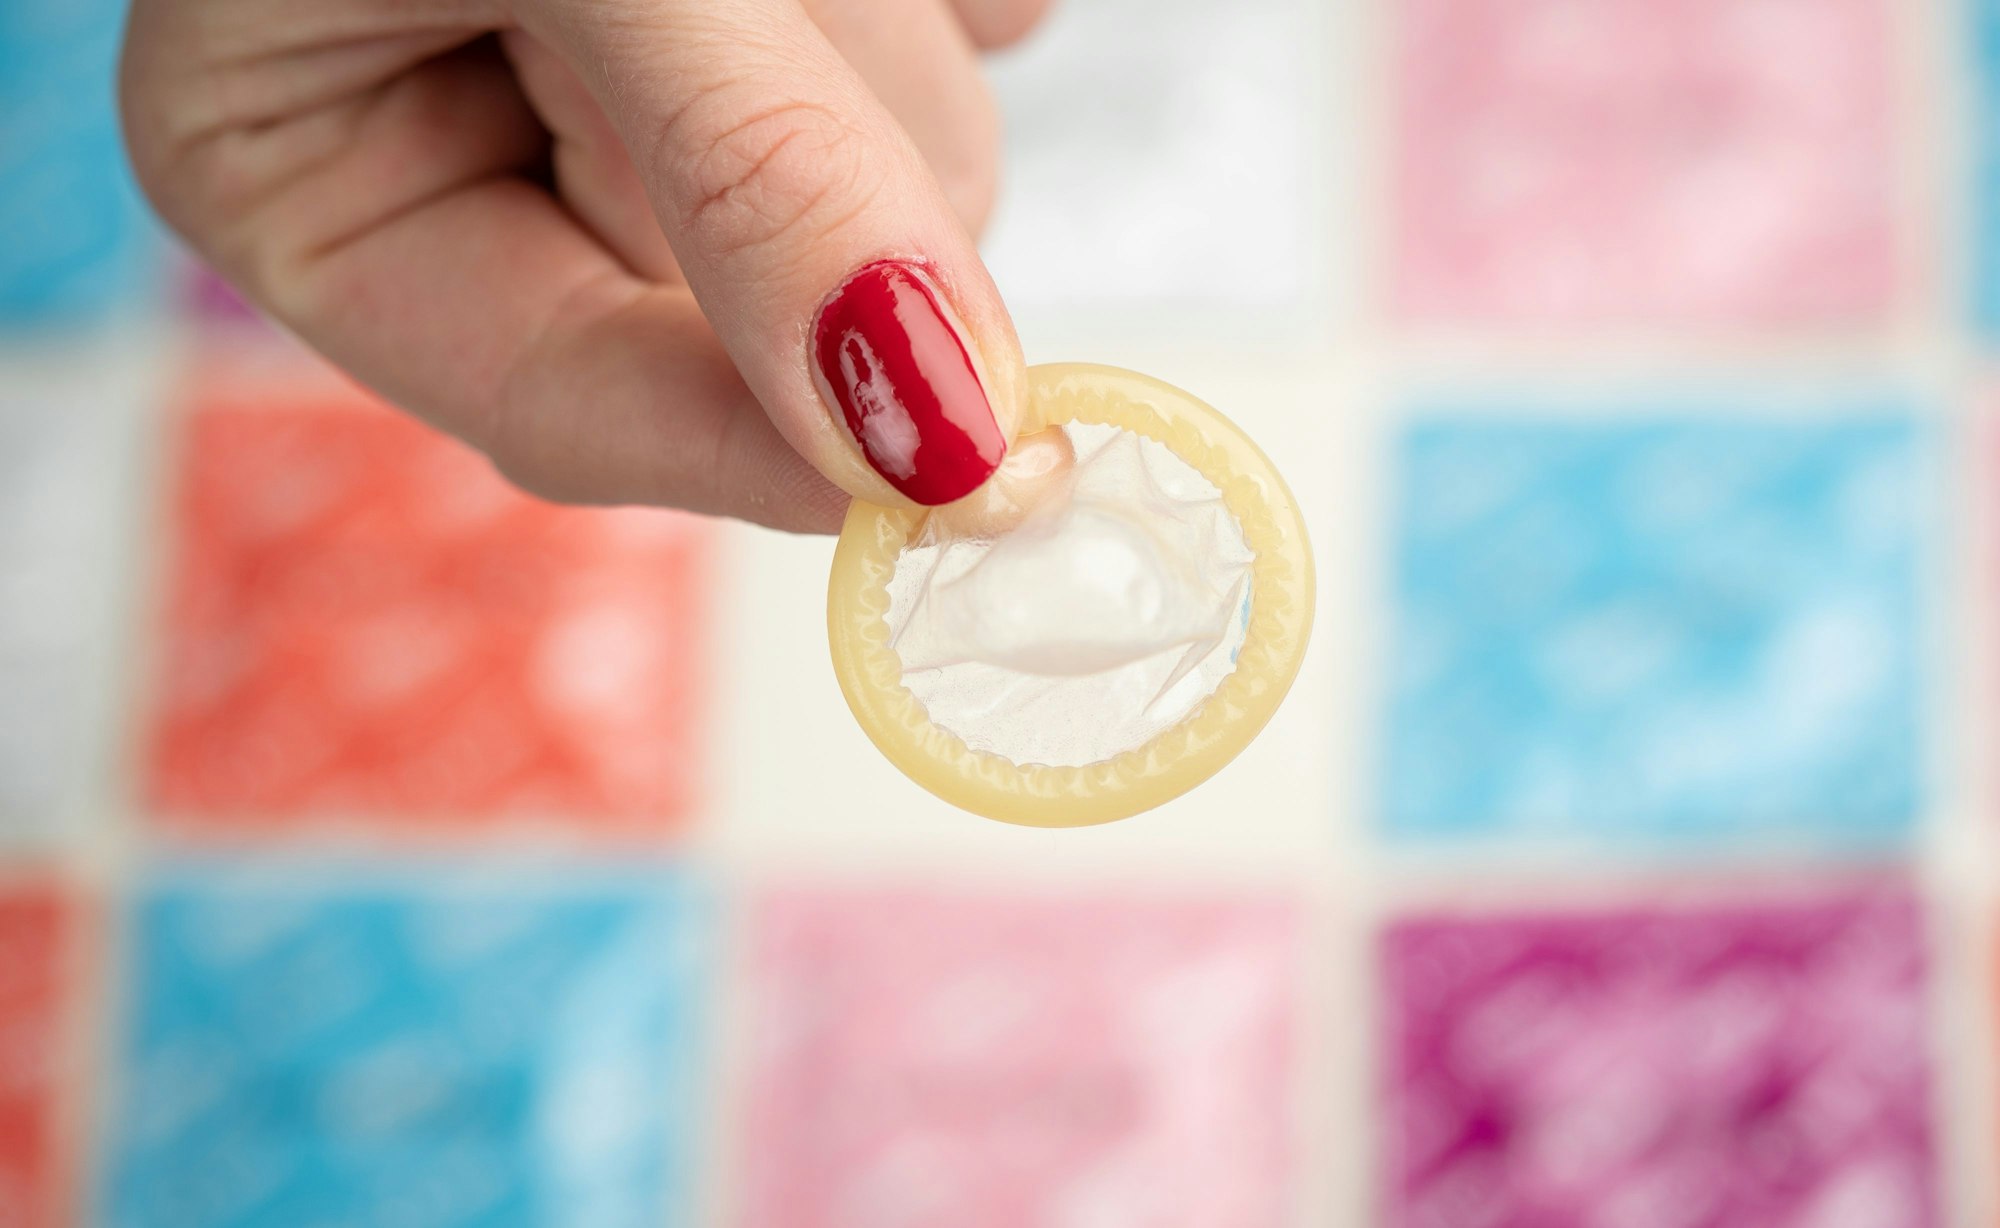 Auf dem Foto ist ein ausgepacktes Kondom zu sehen, bei der Aufnahme handelt es sich um ein Symbolfoto.